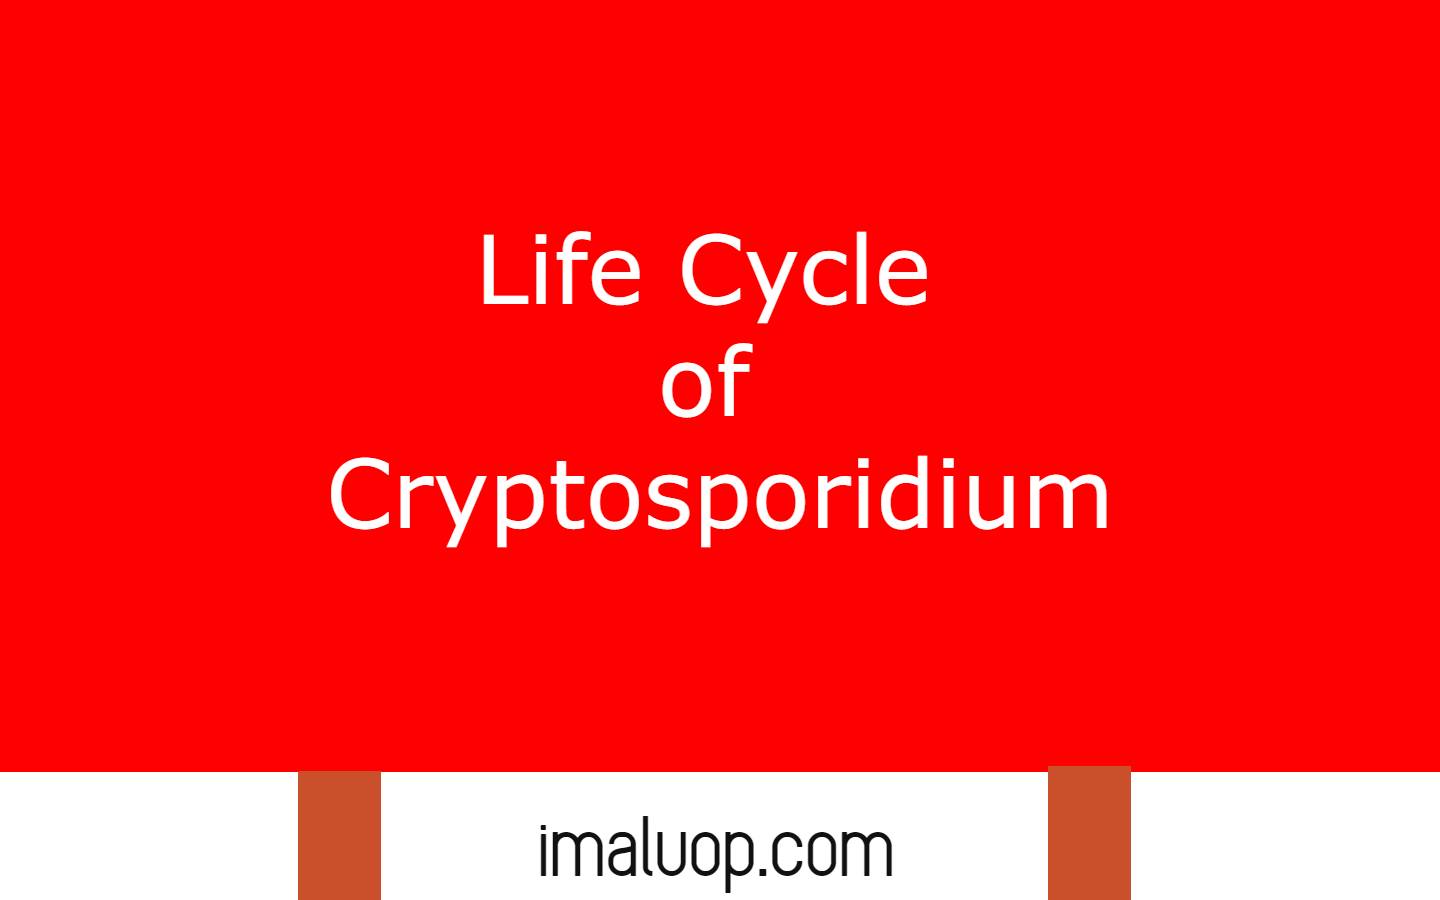 Life Cycle of Cryptosporidium